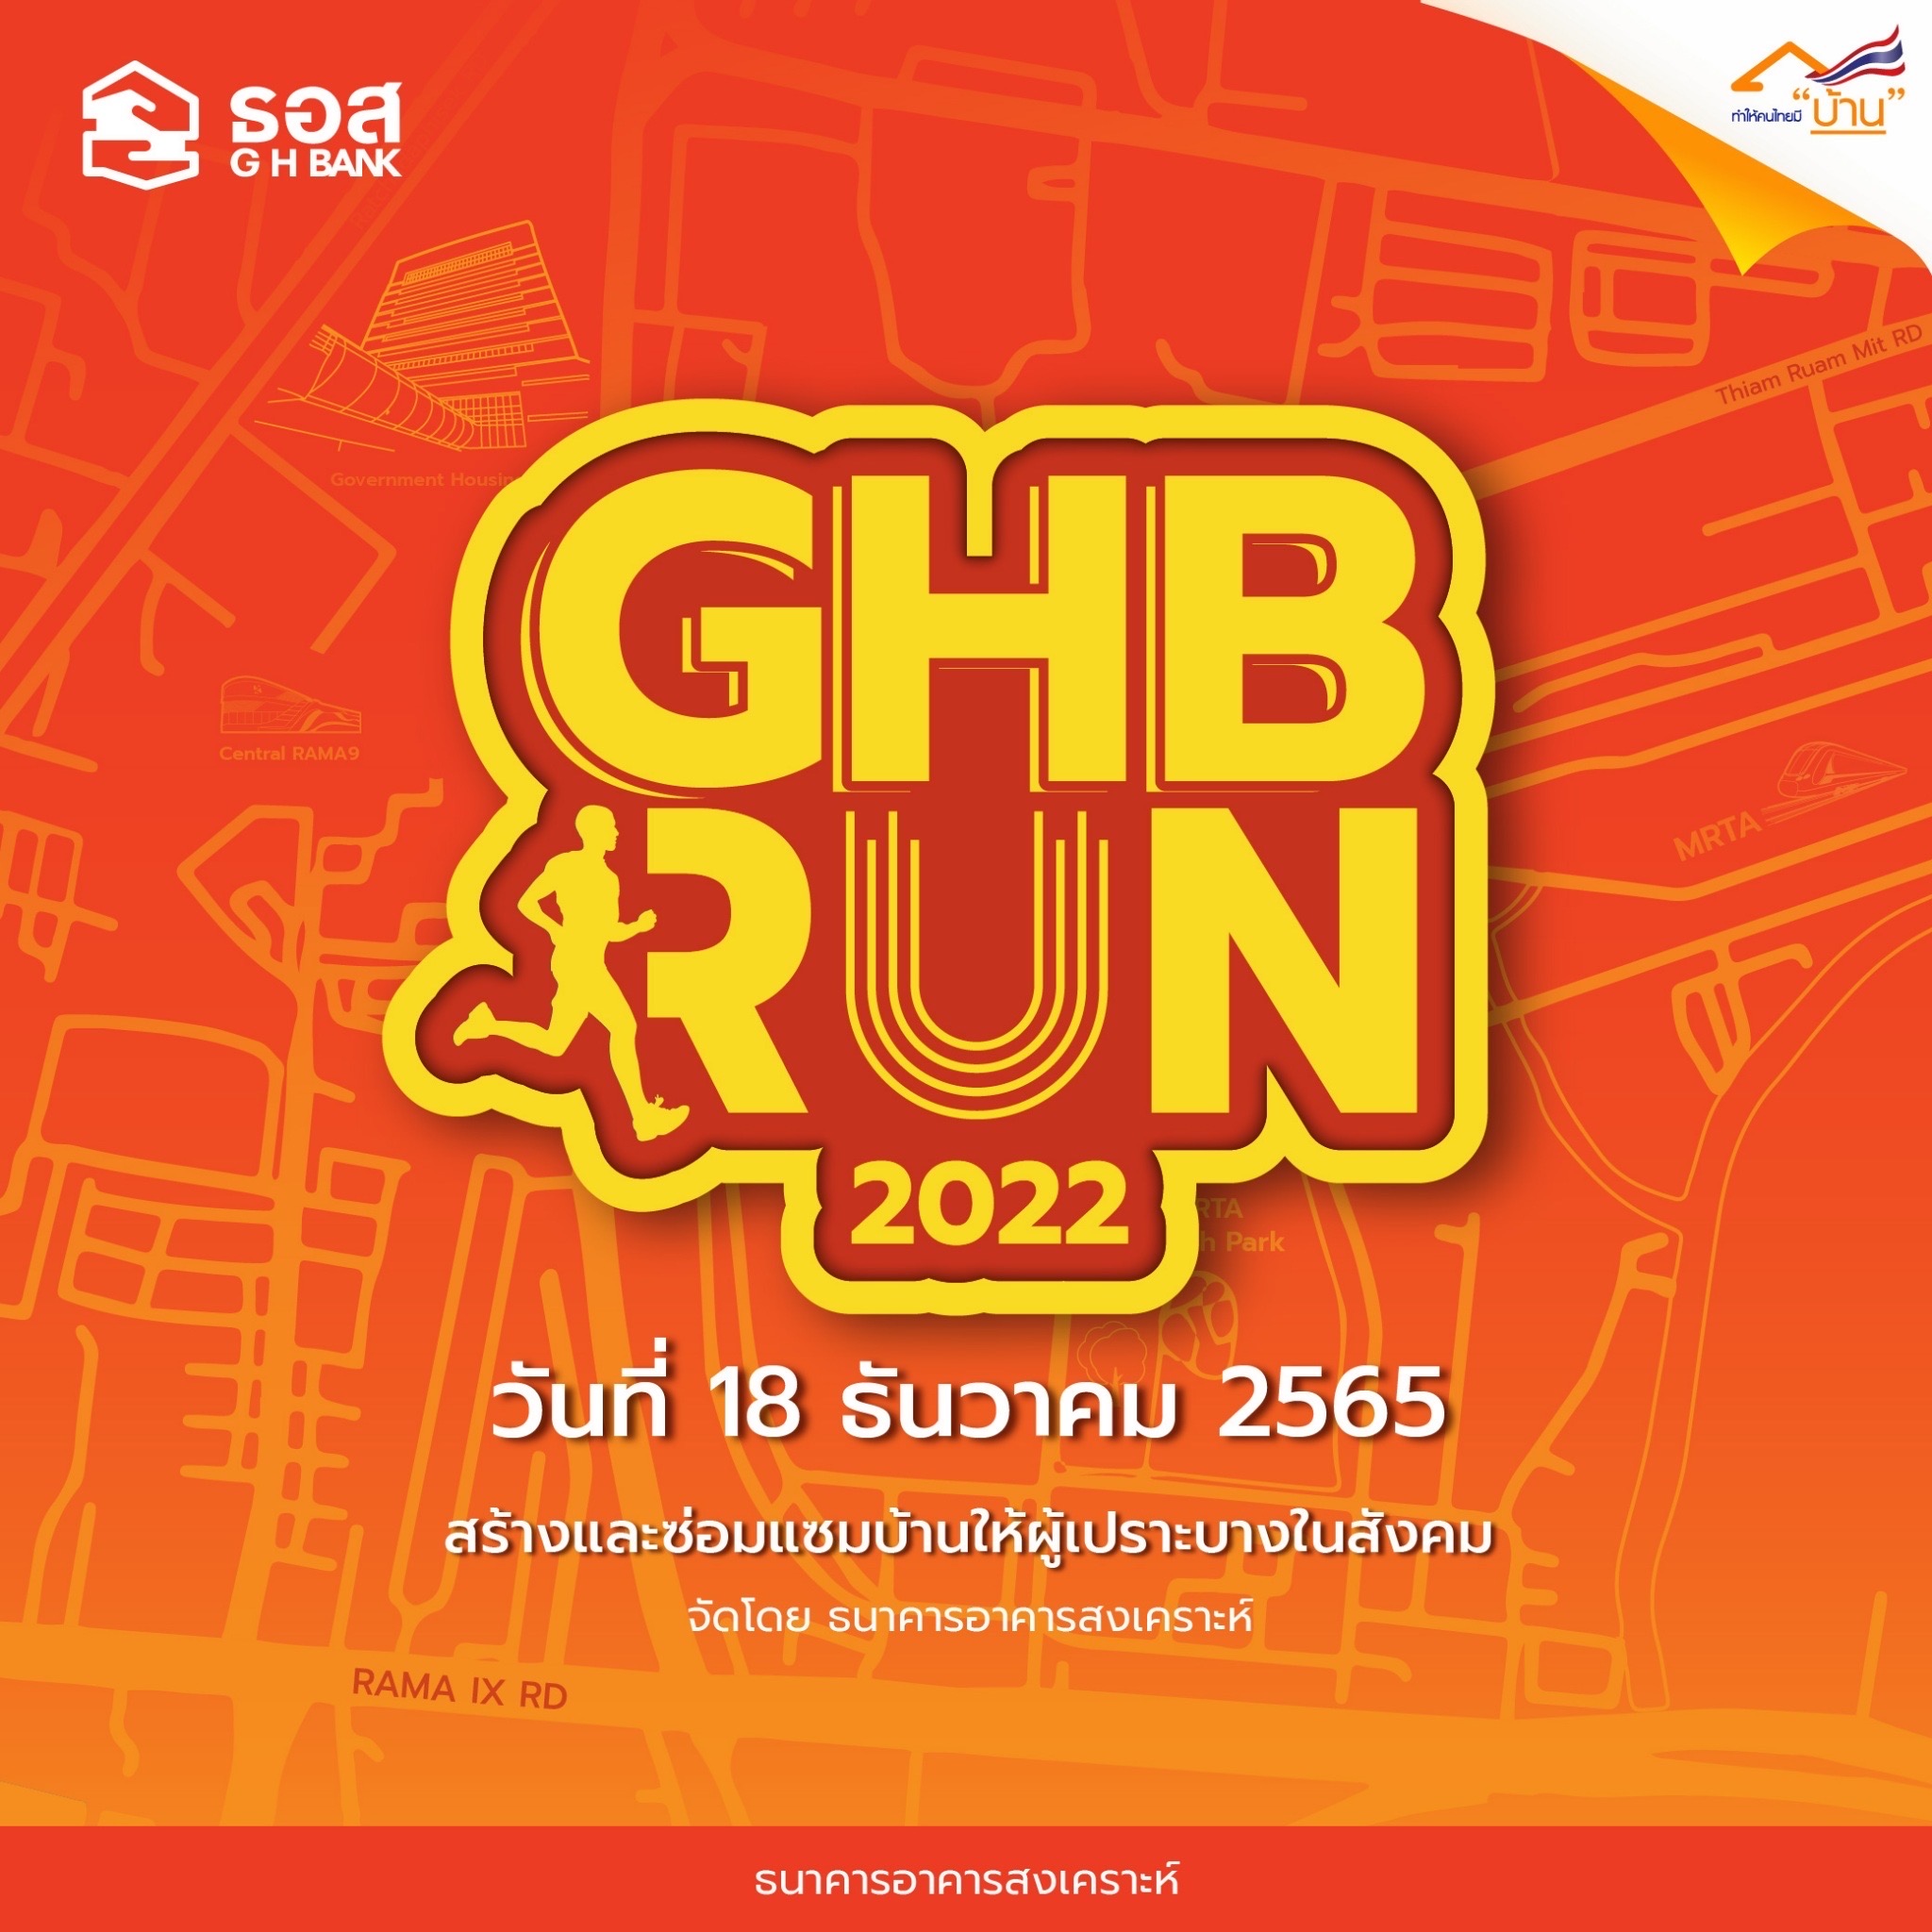 ธอส. ชวนร่วมงานเดิน-วิ่ง GHB RUN 2022 ชิงเงินรางวัล 3.4 แสนบาท อาทิตย์ที่ 18 ธ.ค.นี้